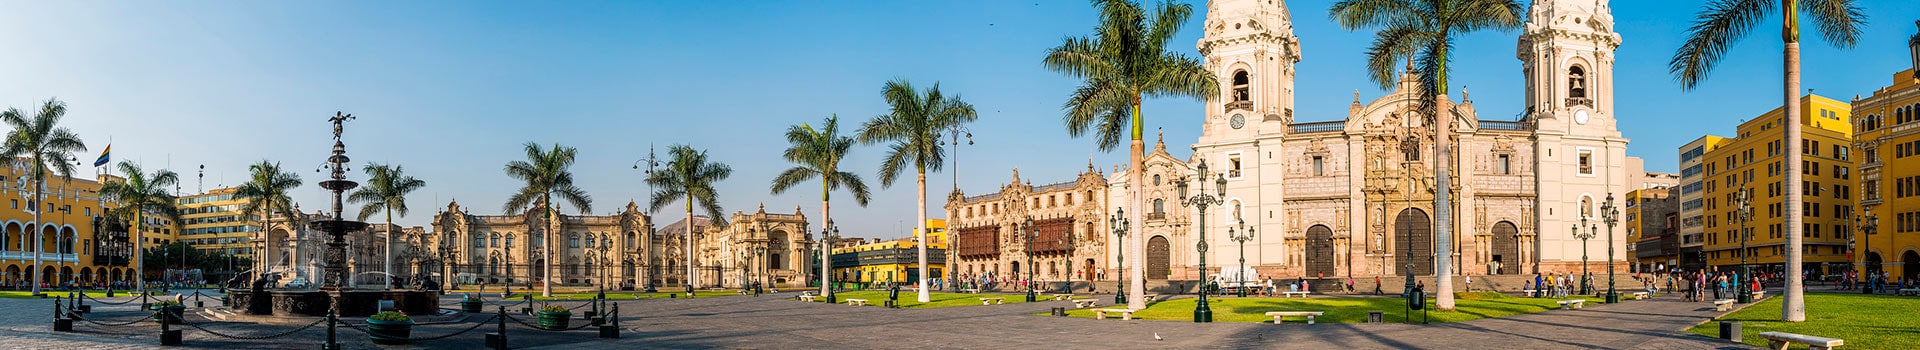 Bari - Lima